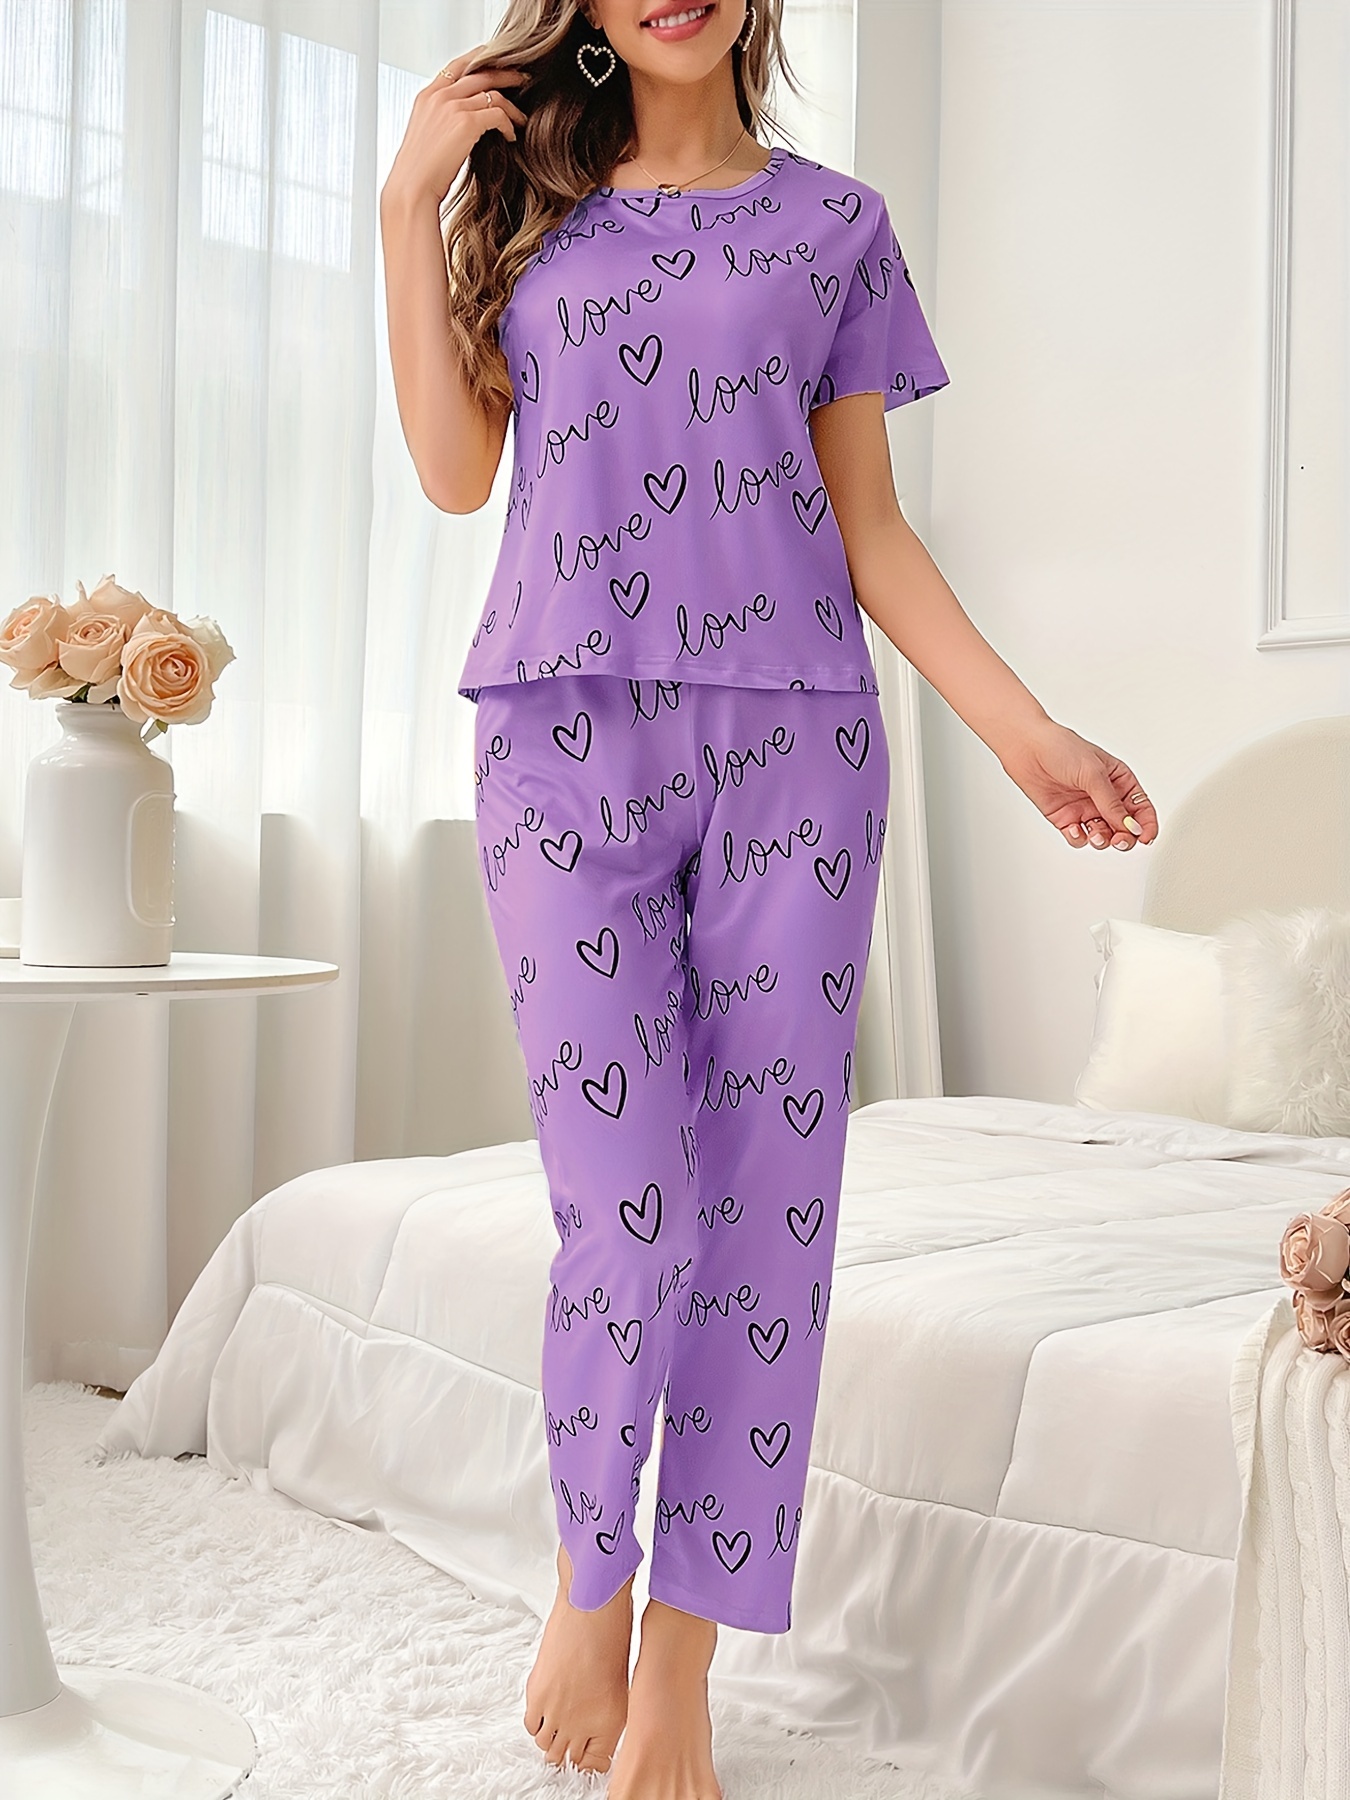 Girls Silk Pajamas Are Best Cotton Pajama Pants Womens Gifts - Silk Pajamas,  Cotton Sleepwear & Loungewear at